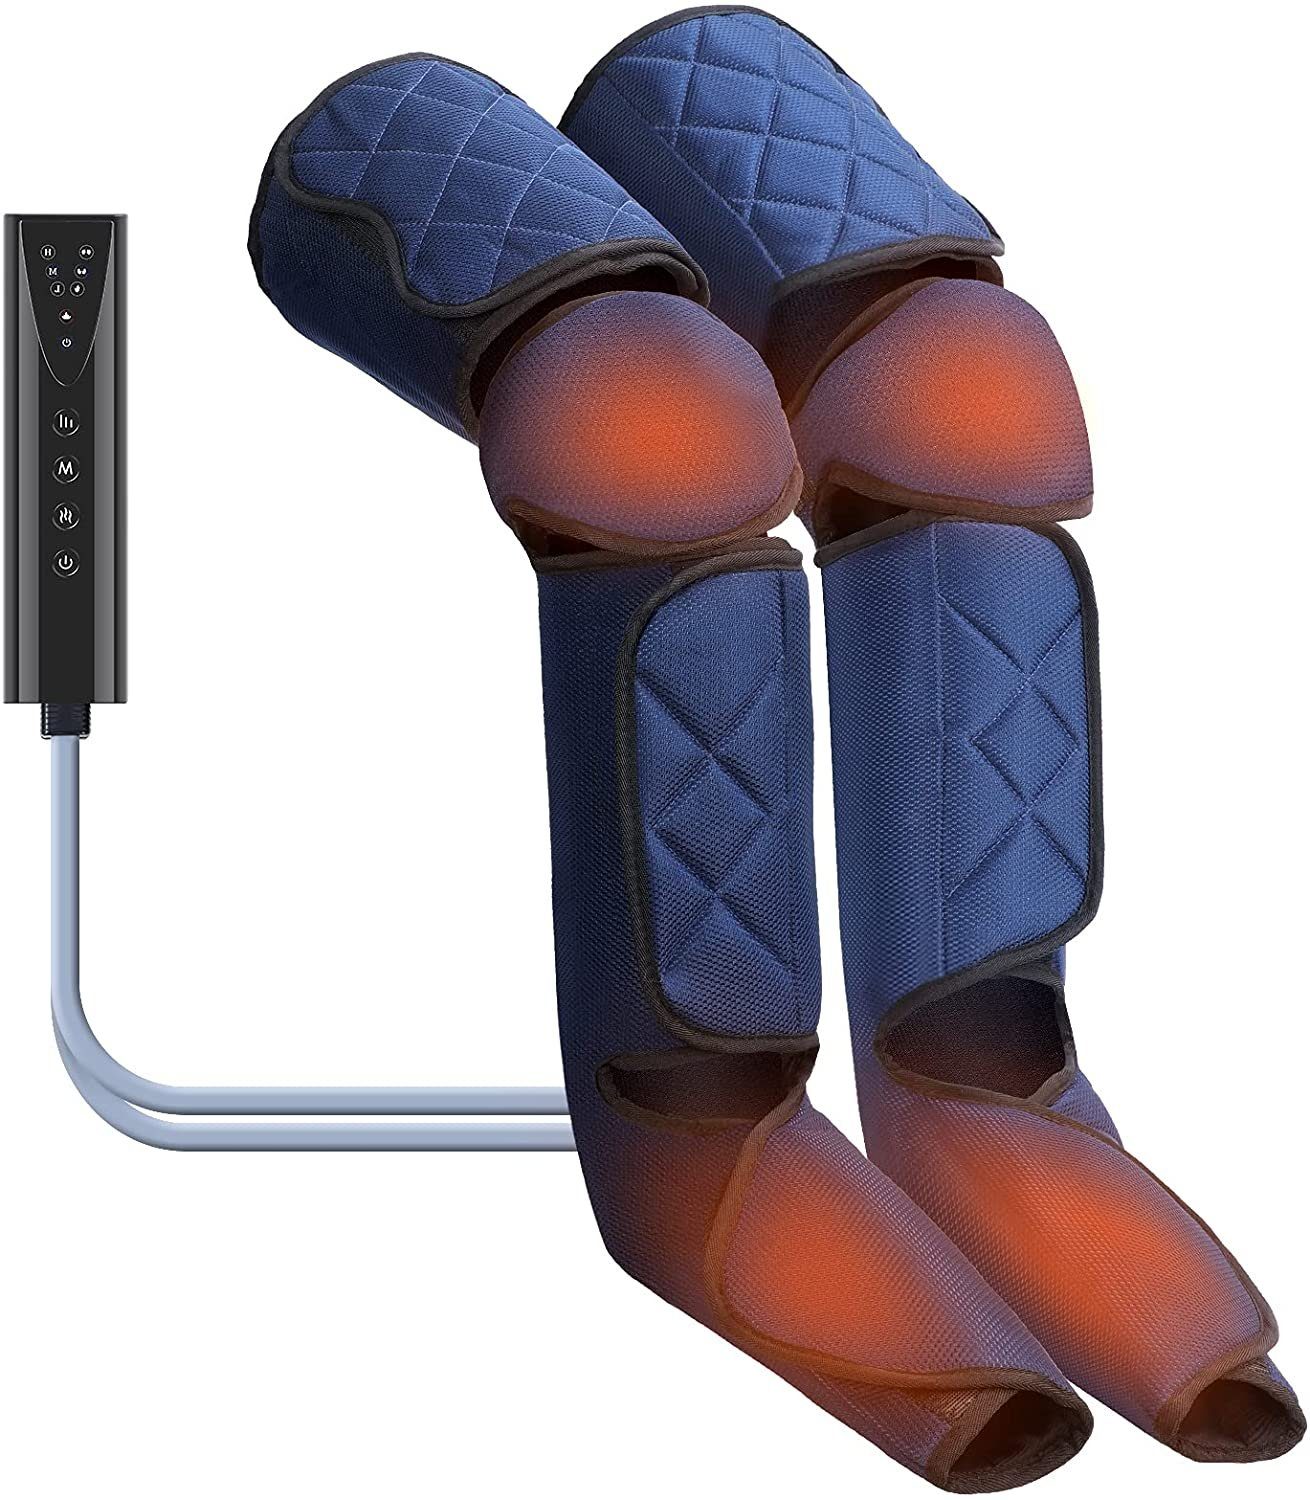 COOL-i ® Fußmassagegerät, Beine Massagegerät Elektrisch für Füße, Waden,  Oberschenkel mit 3 Modi 3 Intensität 360° Kompressionsmassage mit  Heizfunktion